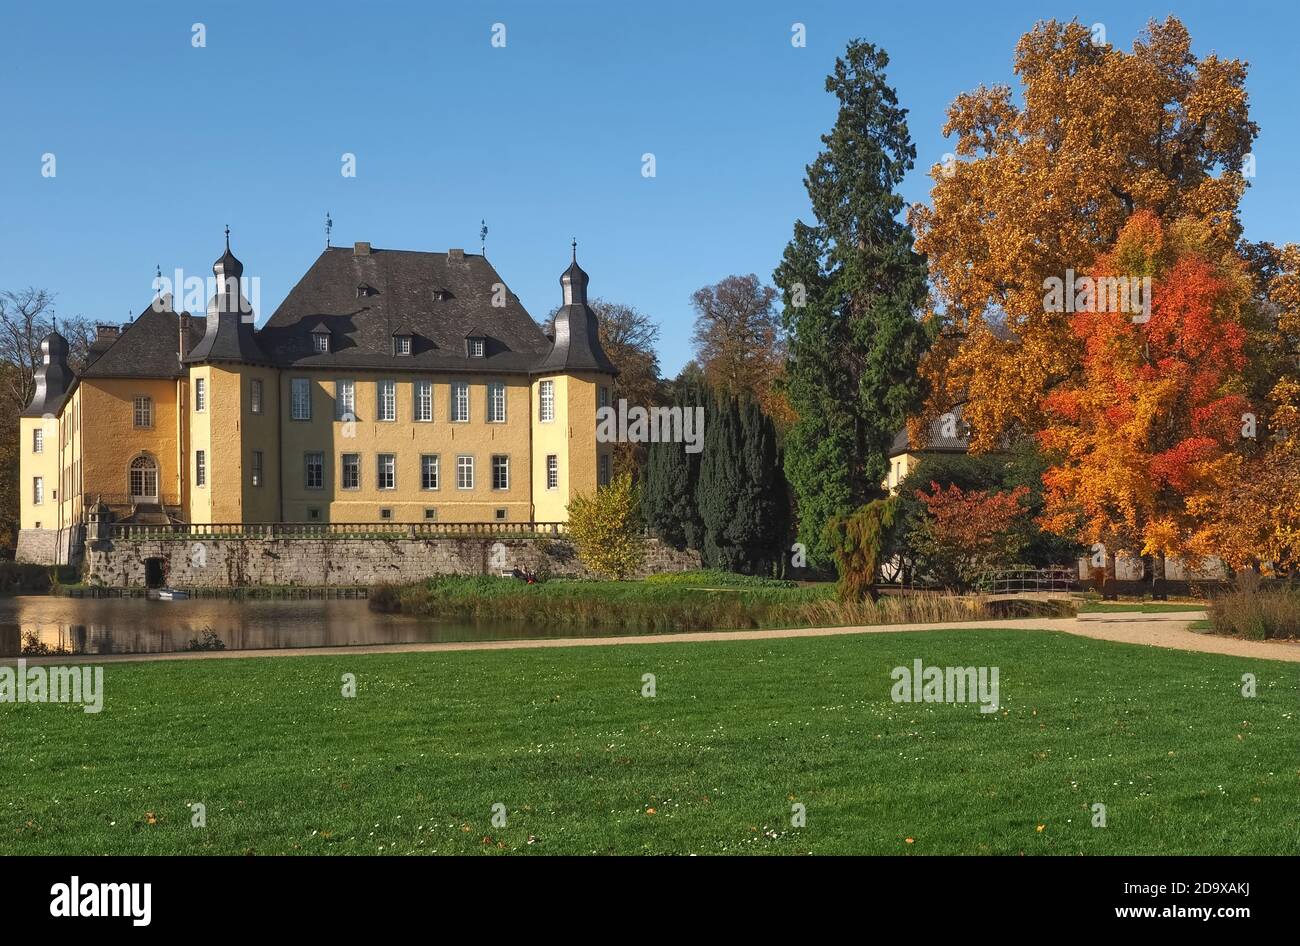 Barocke Wasserburg Schloss Dyck in Deutschland Stockfoto